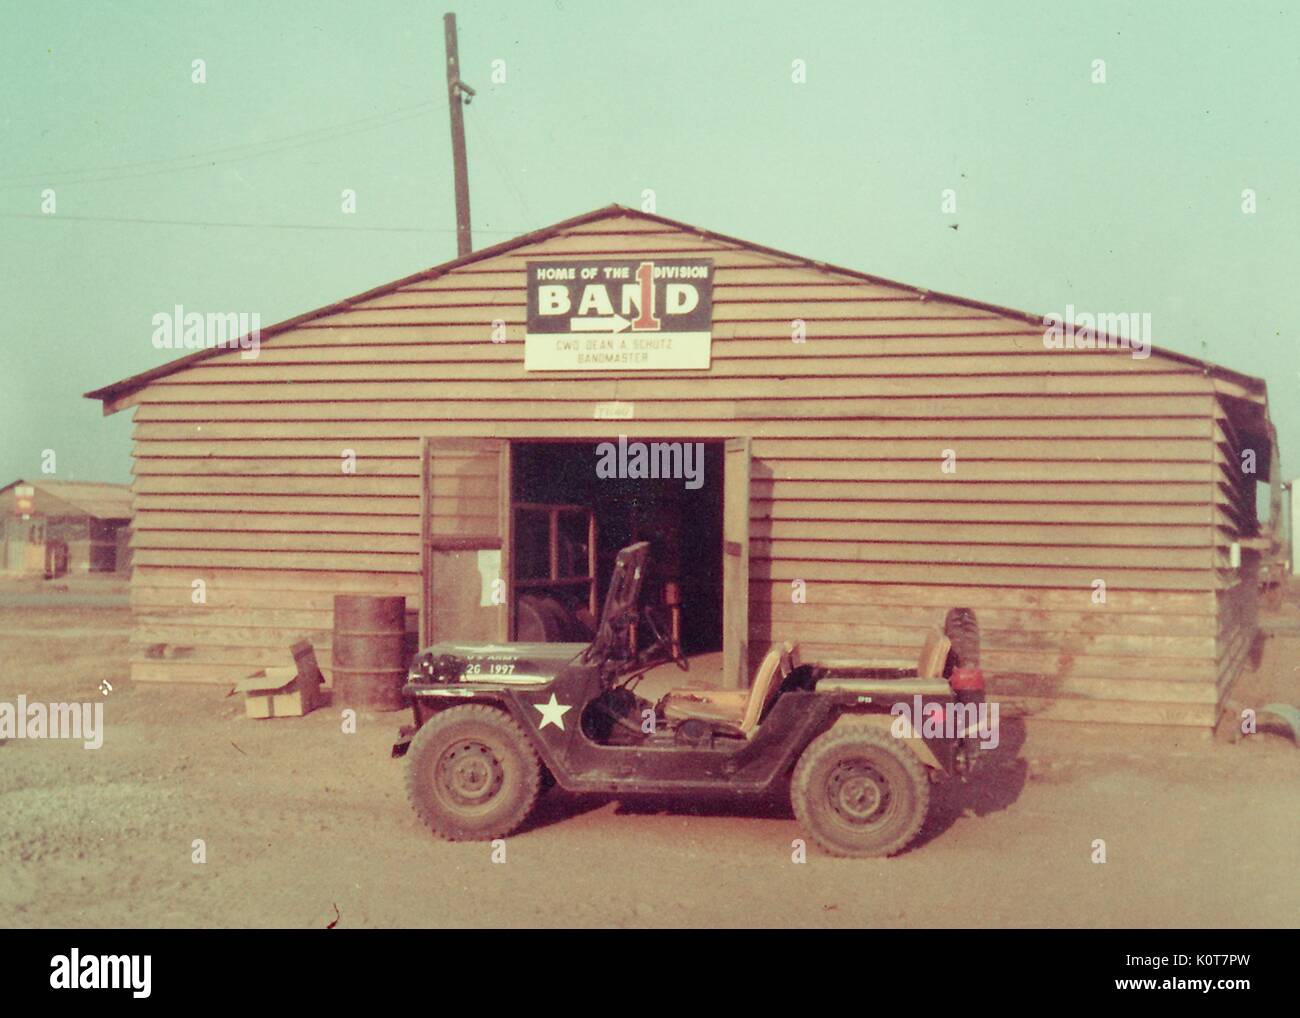 Logements de la caserne de la 1ère Division d'infanterie de la bande l'armée américaine pendant la guerre du Vietnam, avec une Jeep garée devant, Vietnam, 1970. Banque D'Images